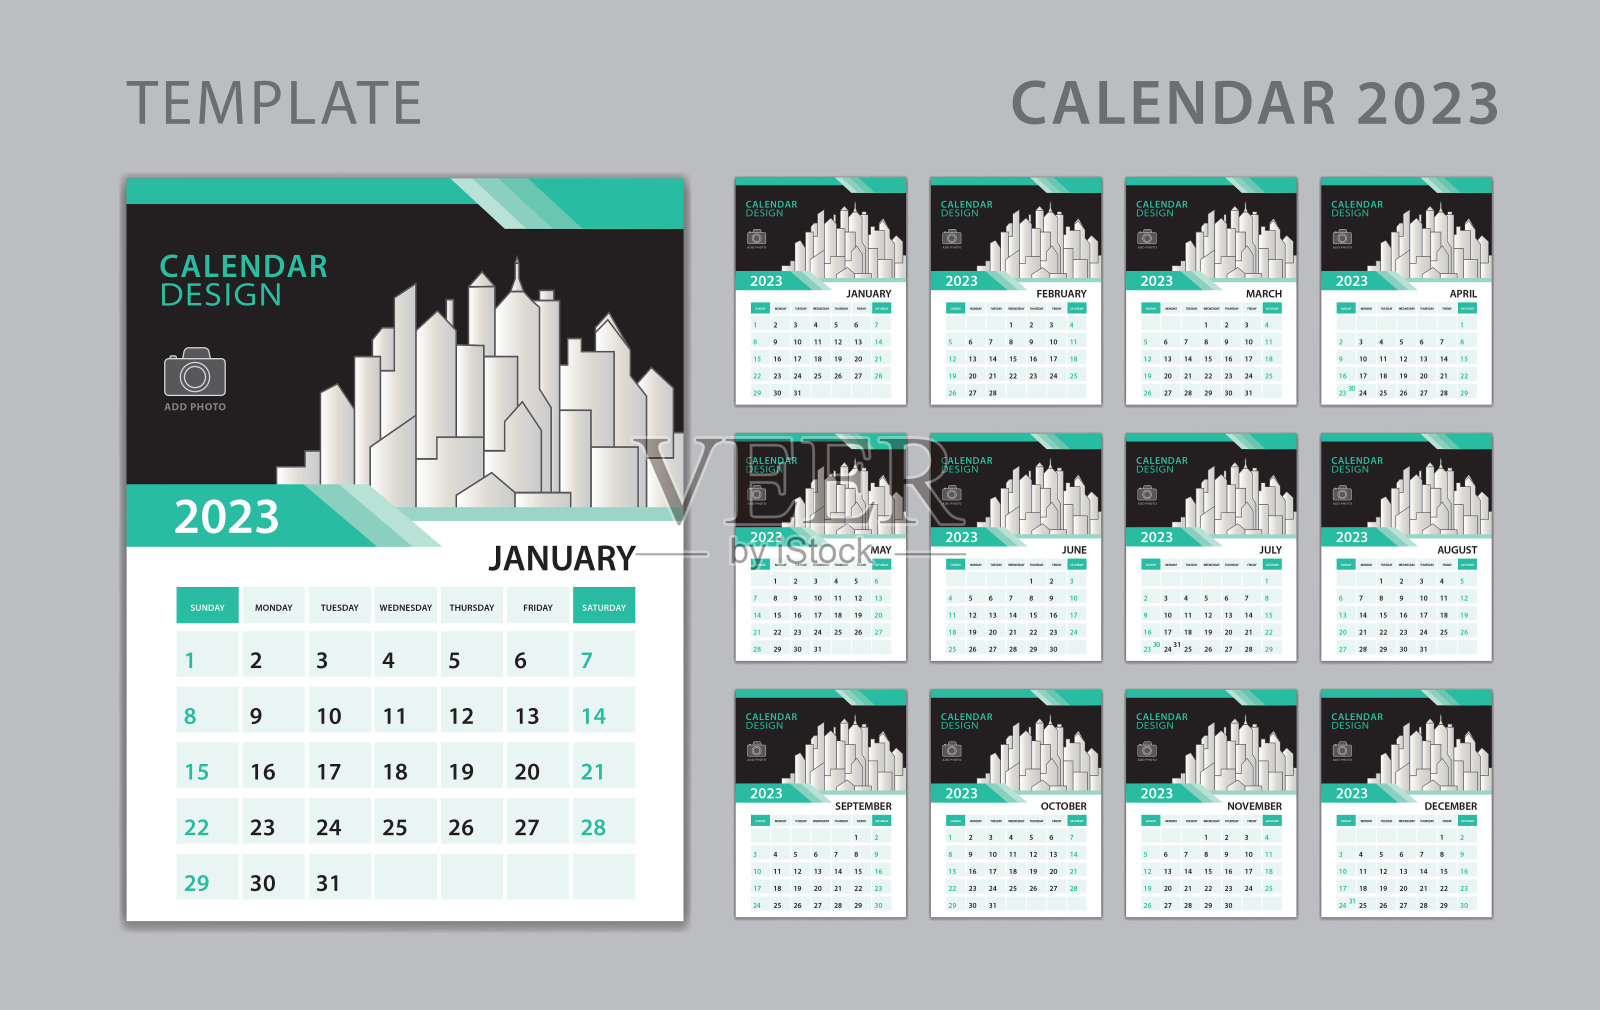 日历2023模板，设置办公桌日历设计与地方的照片和公司标志。墙上的日历。一周从周日开始。挂历2023年，一套12个月。创意日历设计设计模板素材